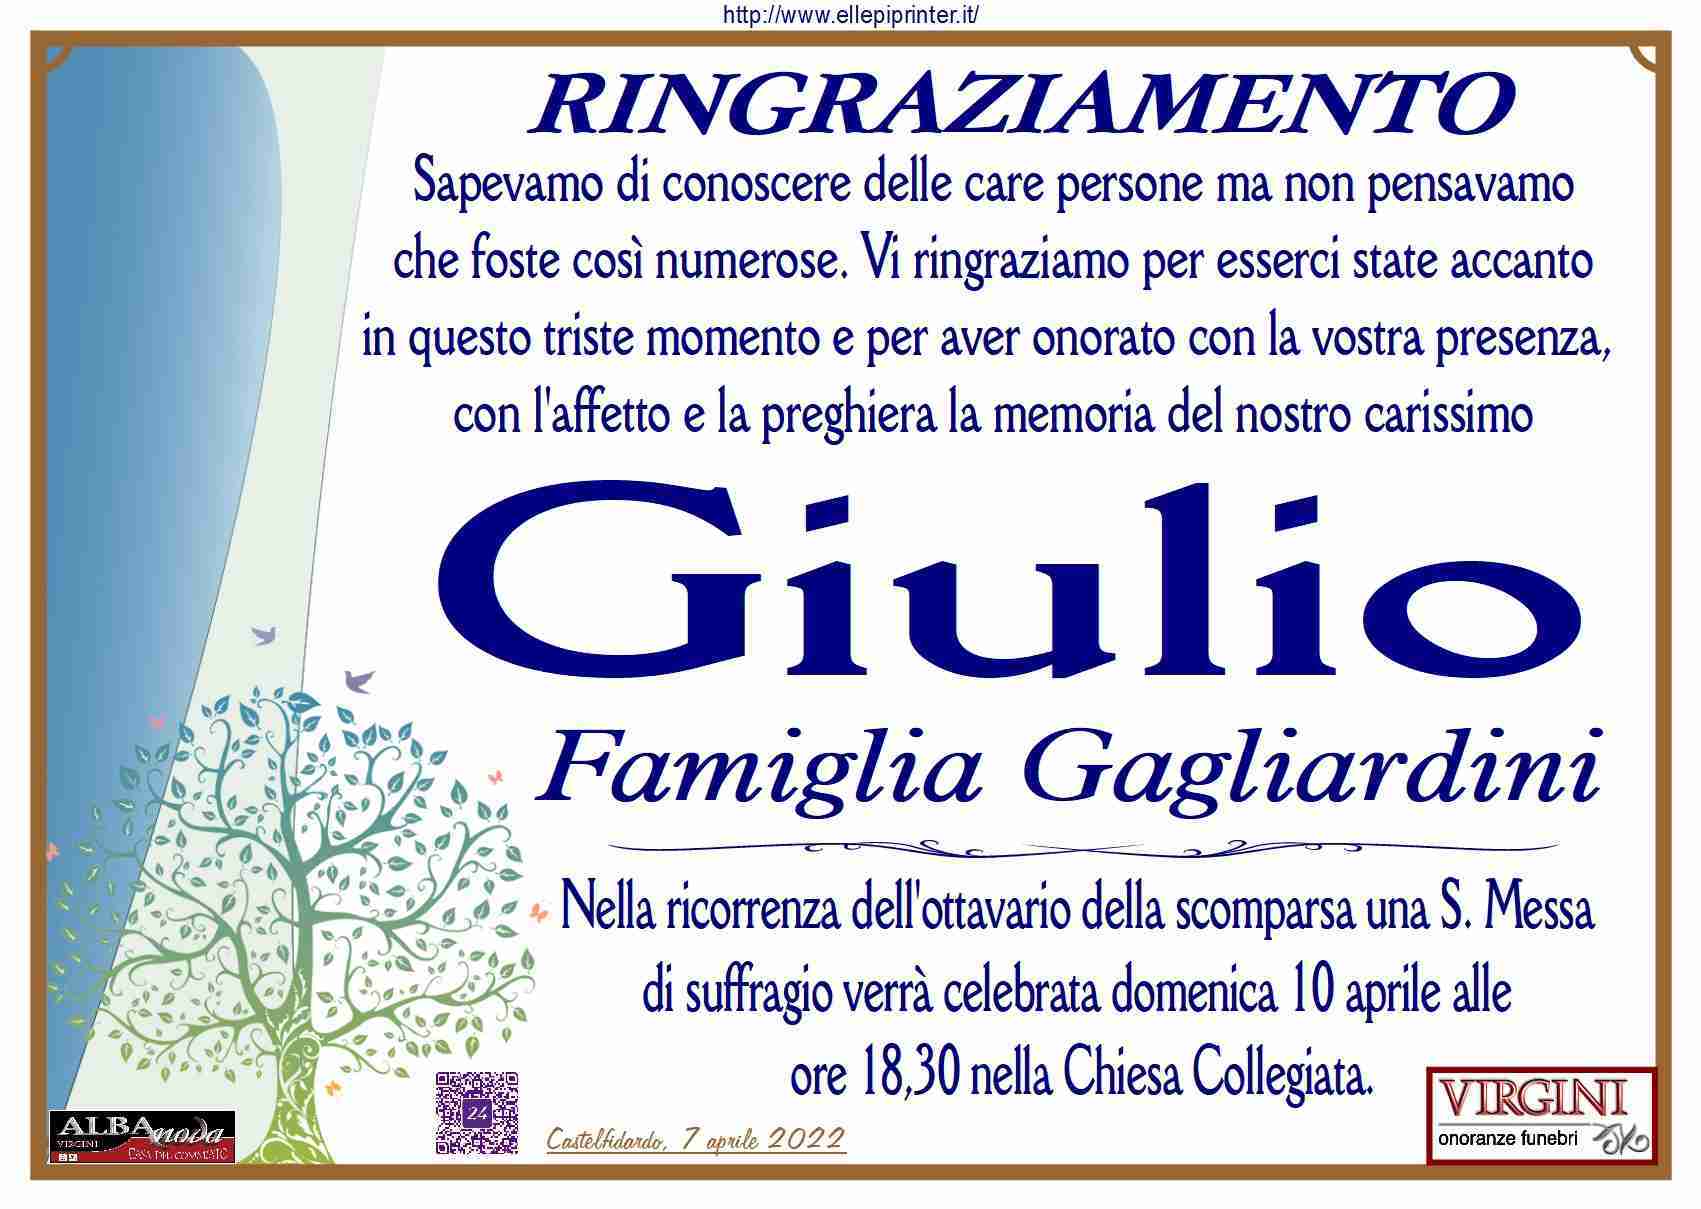 Giulio Gagliardini